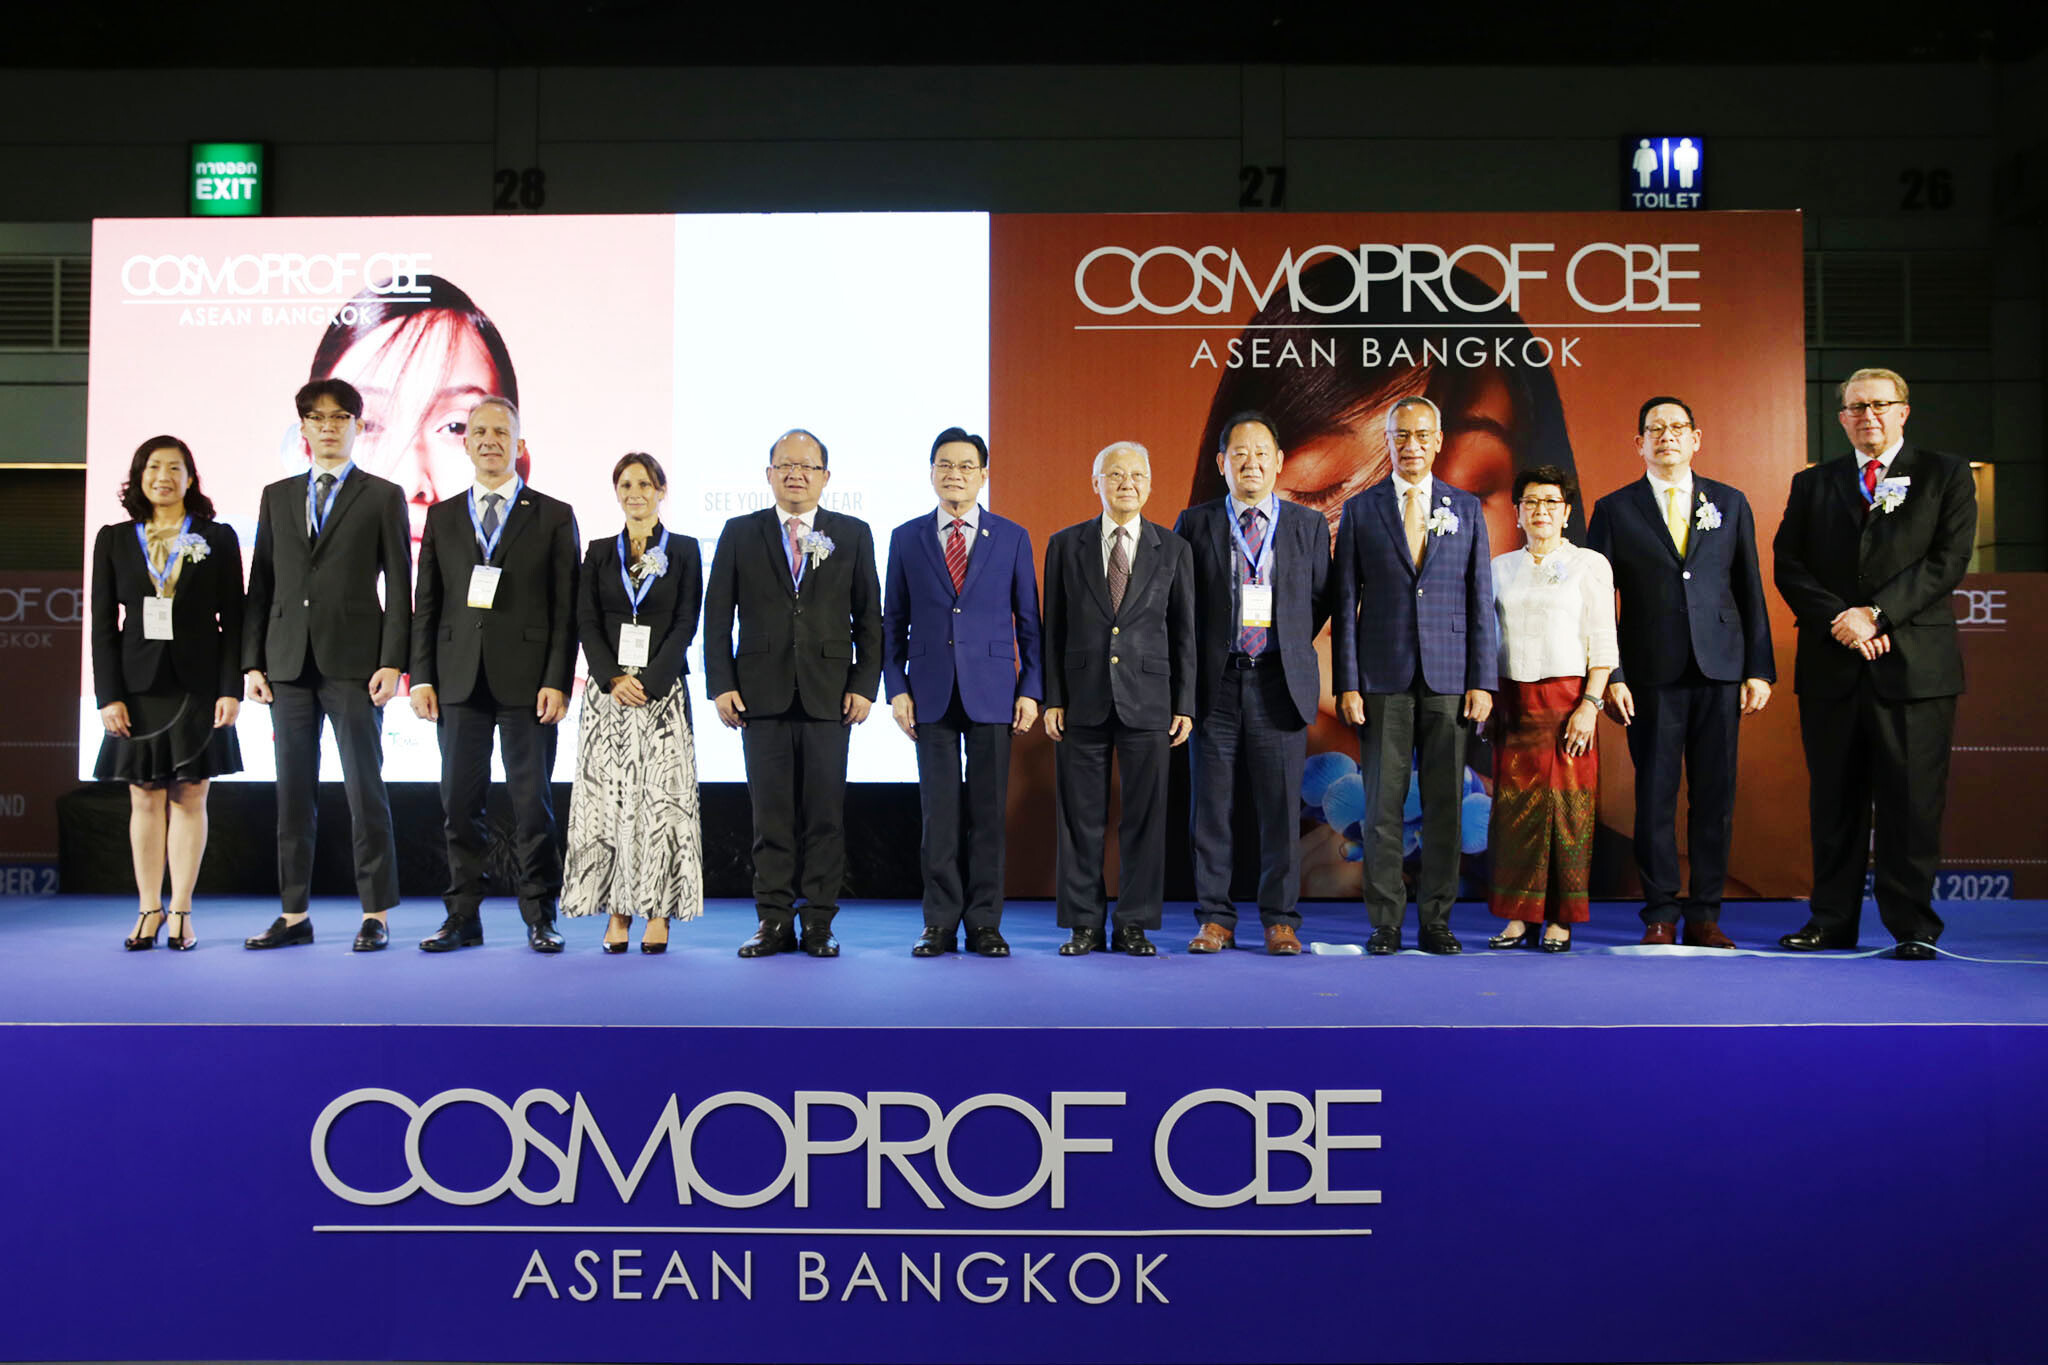 งานแสดงสินค้าเพื่อธุรกิจความงามระดับโลก "คอสโมพรอฟ ซีบีอี อาเซียน" ครั้งแรกในประเทศไทย